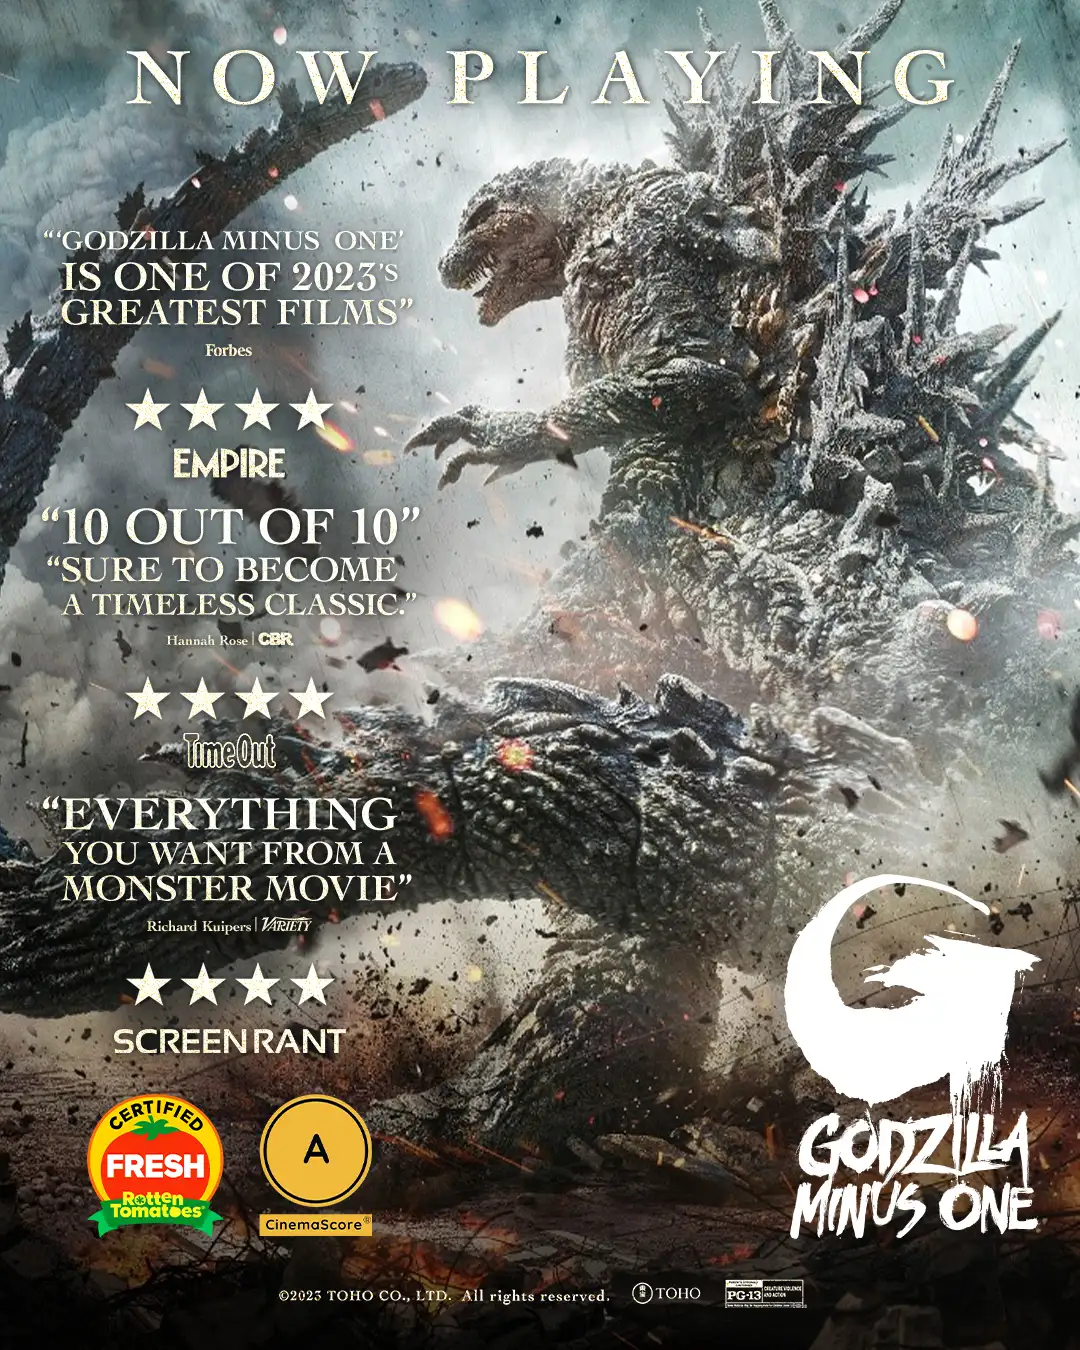 Godzilla CERTIFIED FRESH at 97% on RottenTomatoes.com